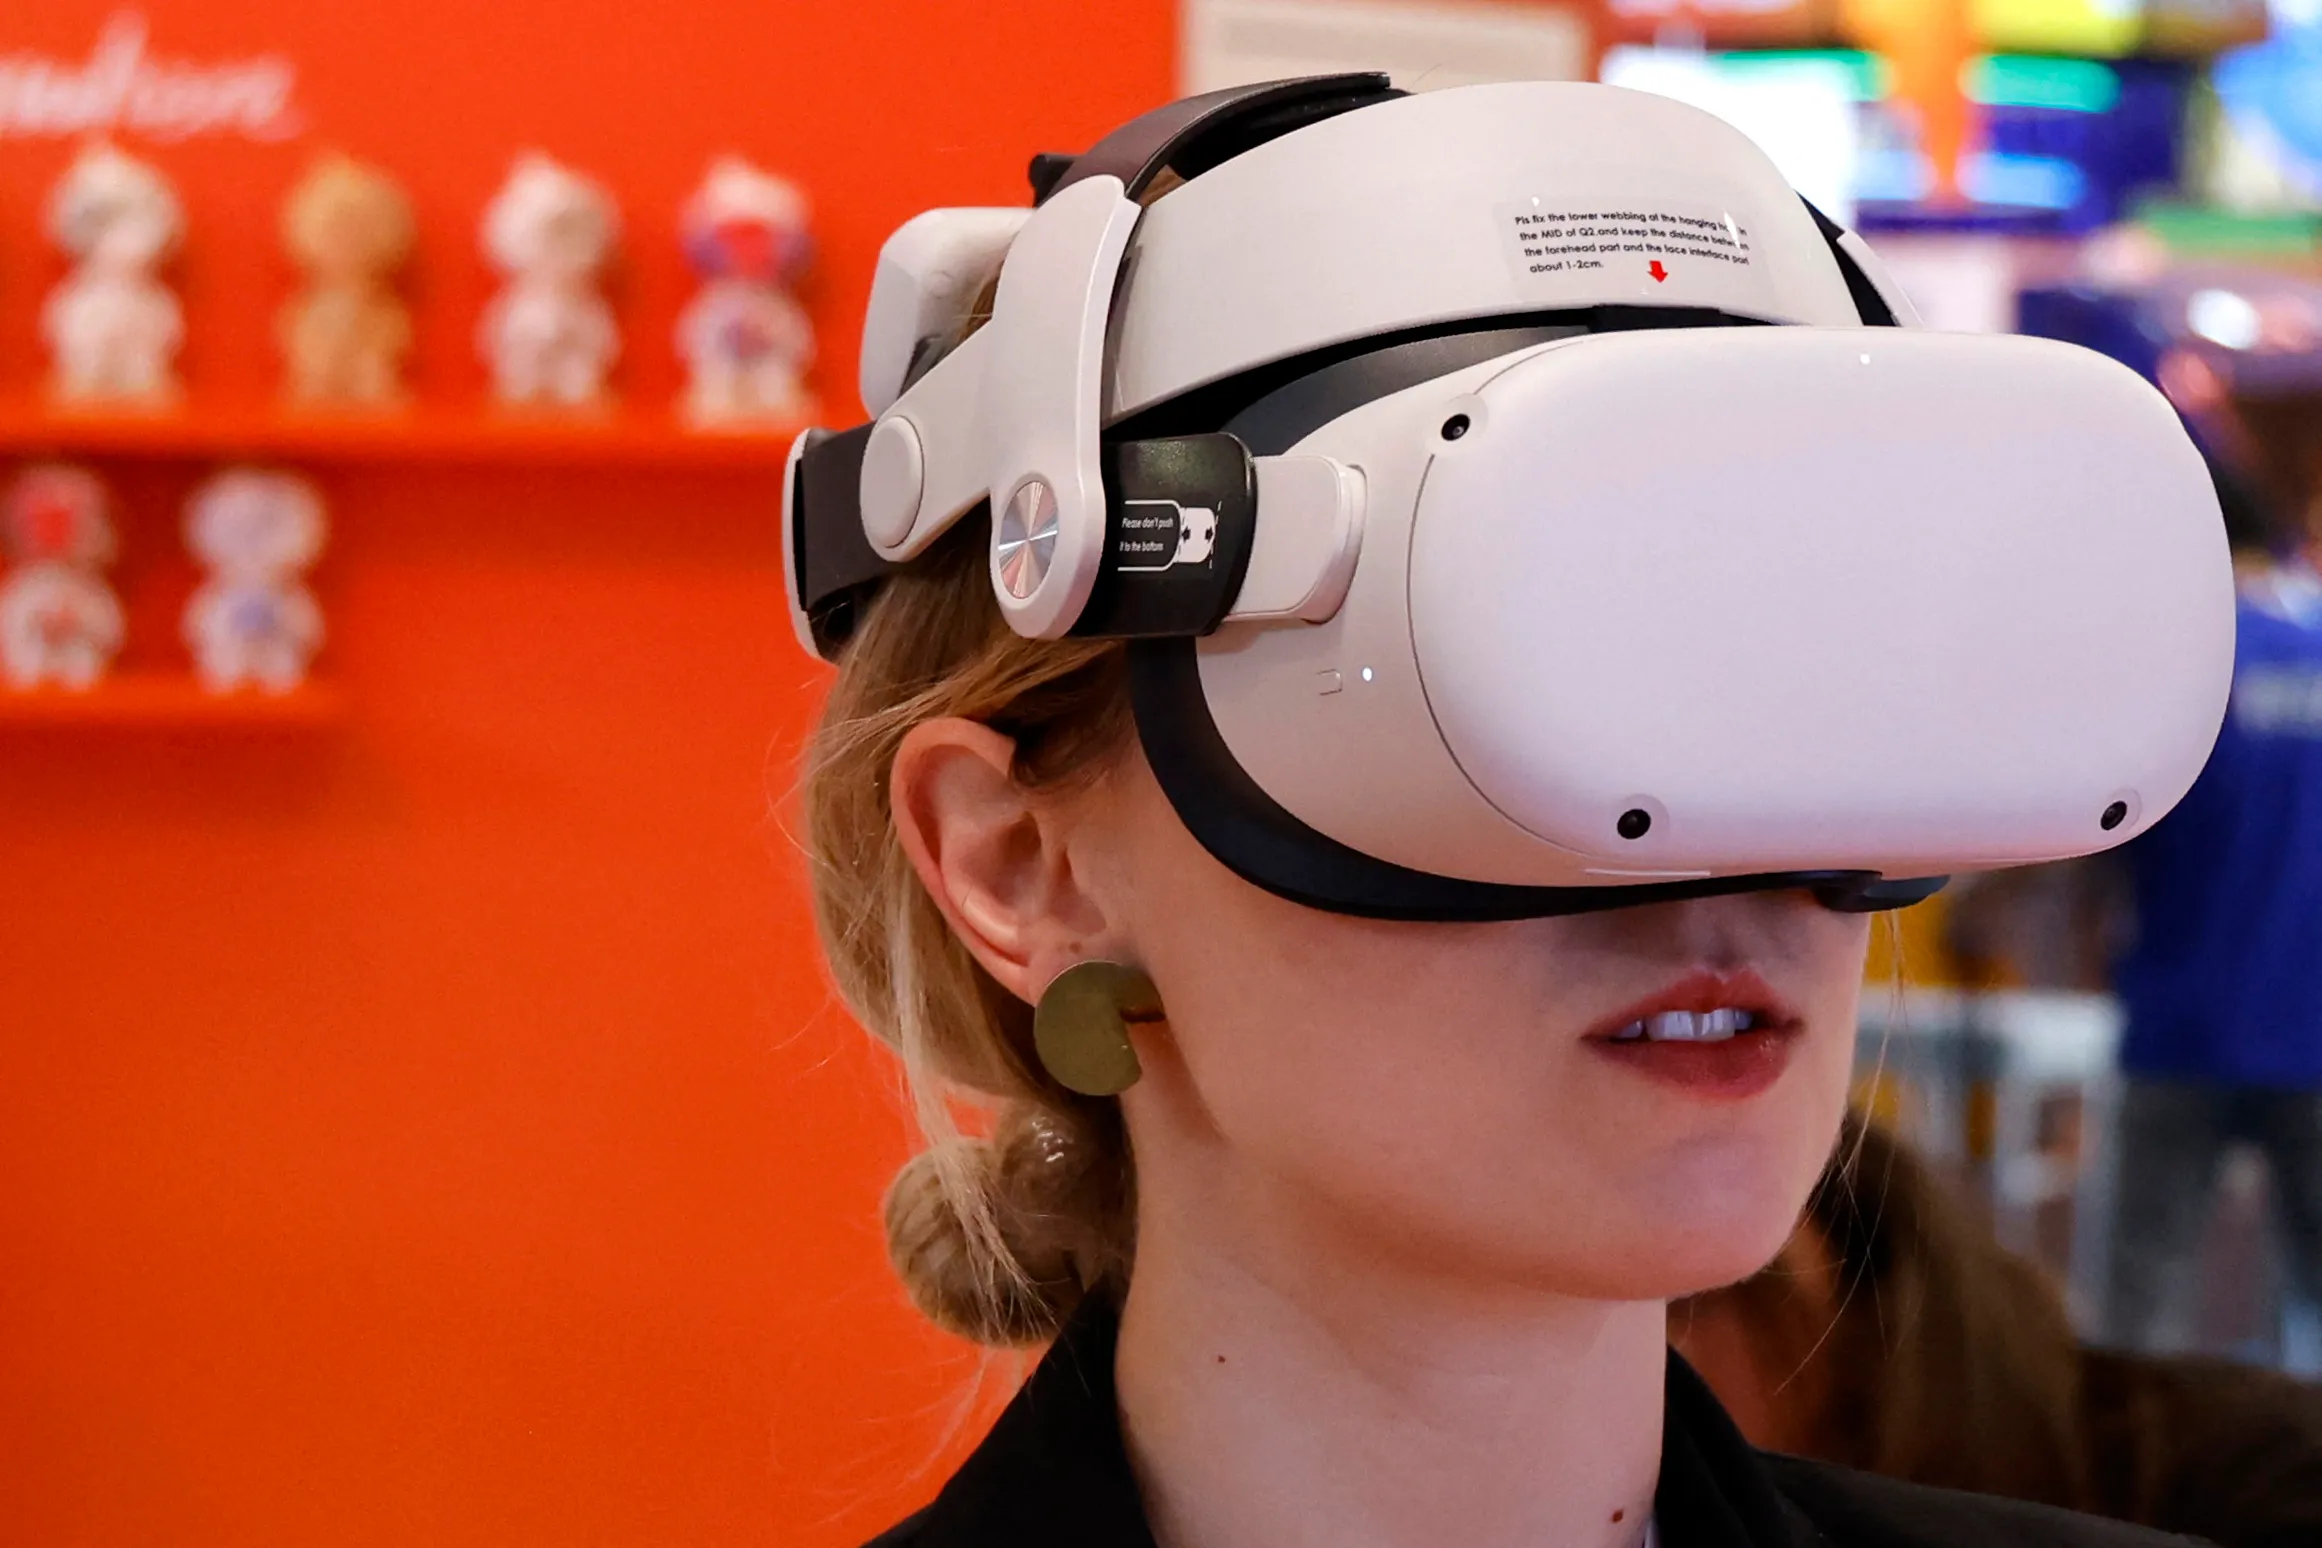 图片展示一位女士戴着头戴式虚拟现实（VR）设备，似乎在体验沉浸式的数字内容。